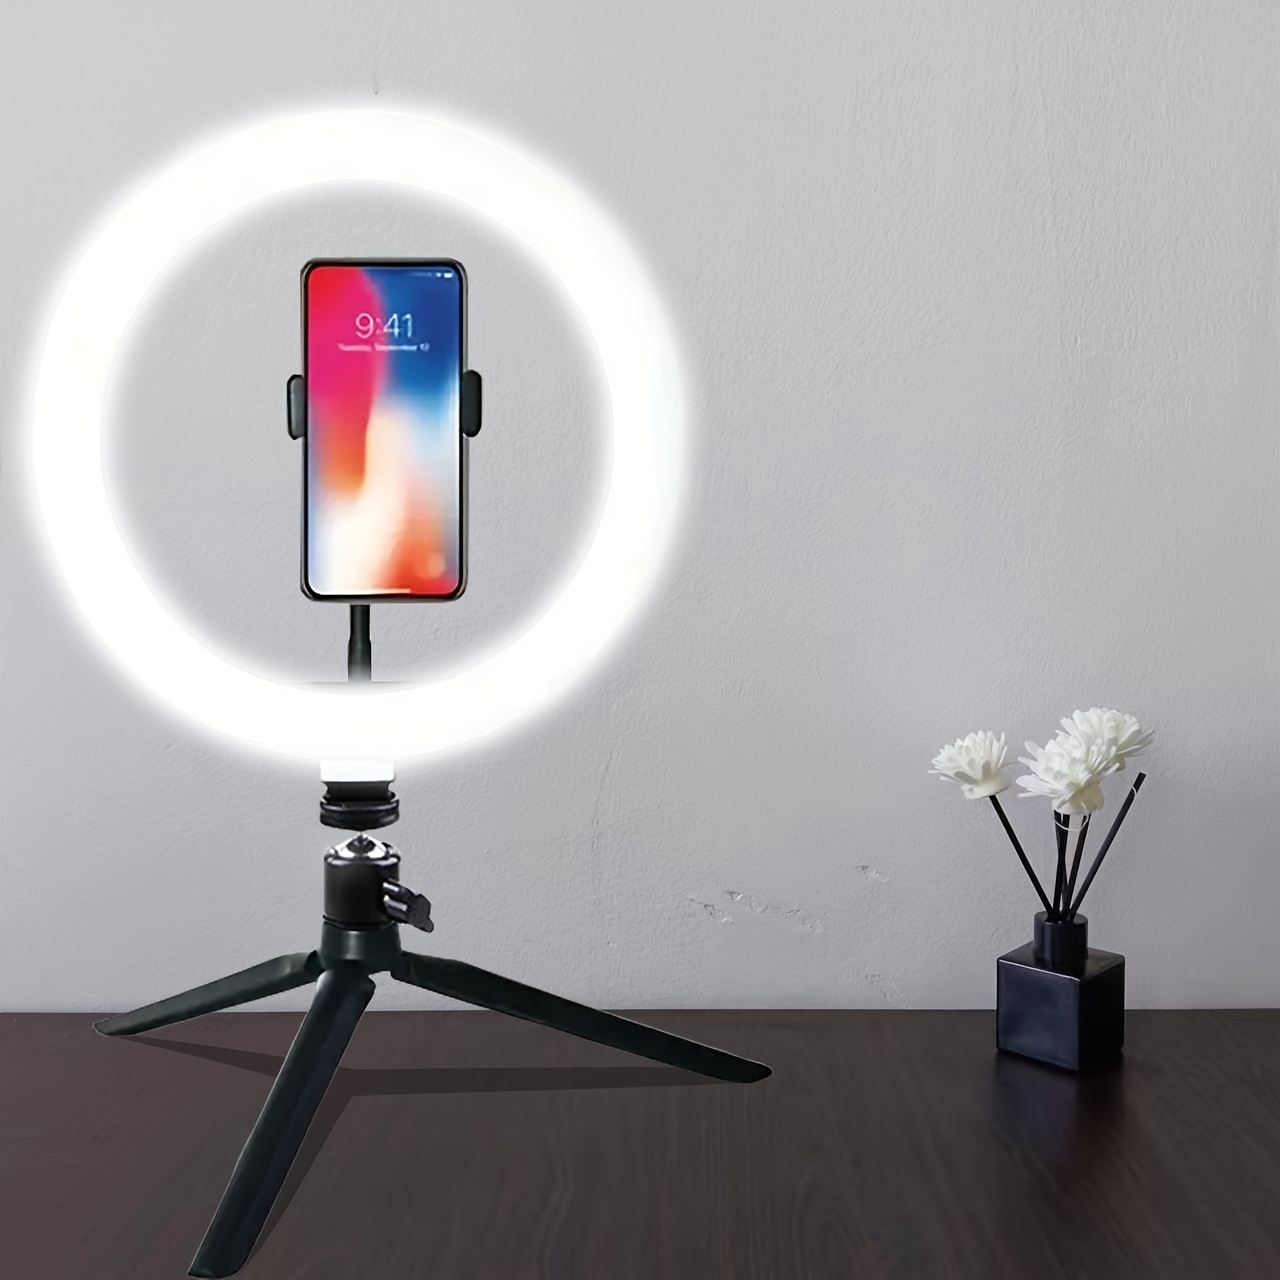  Anillo de luz LED de 13 pulgadas con soporte y soporte para  teléfono, trípode de 63 pulgadas para iPhone, selfie, /Tiktok para  maquillaje, reuniones de zoom, fotografía y para vlogs 